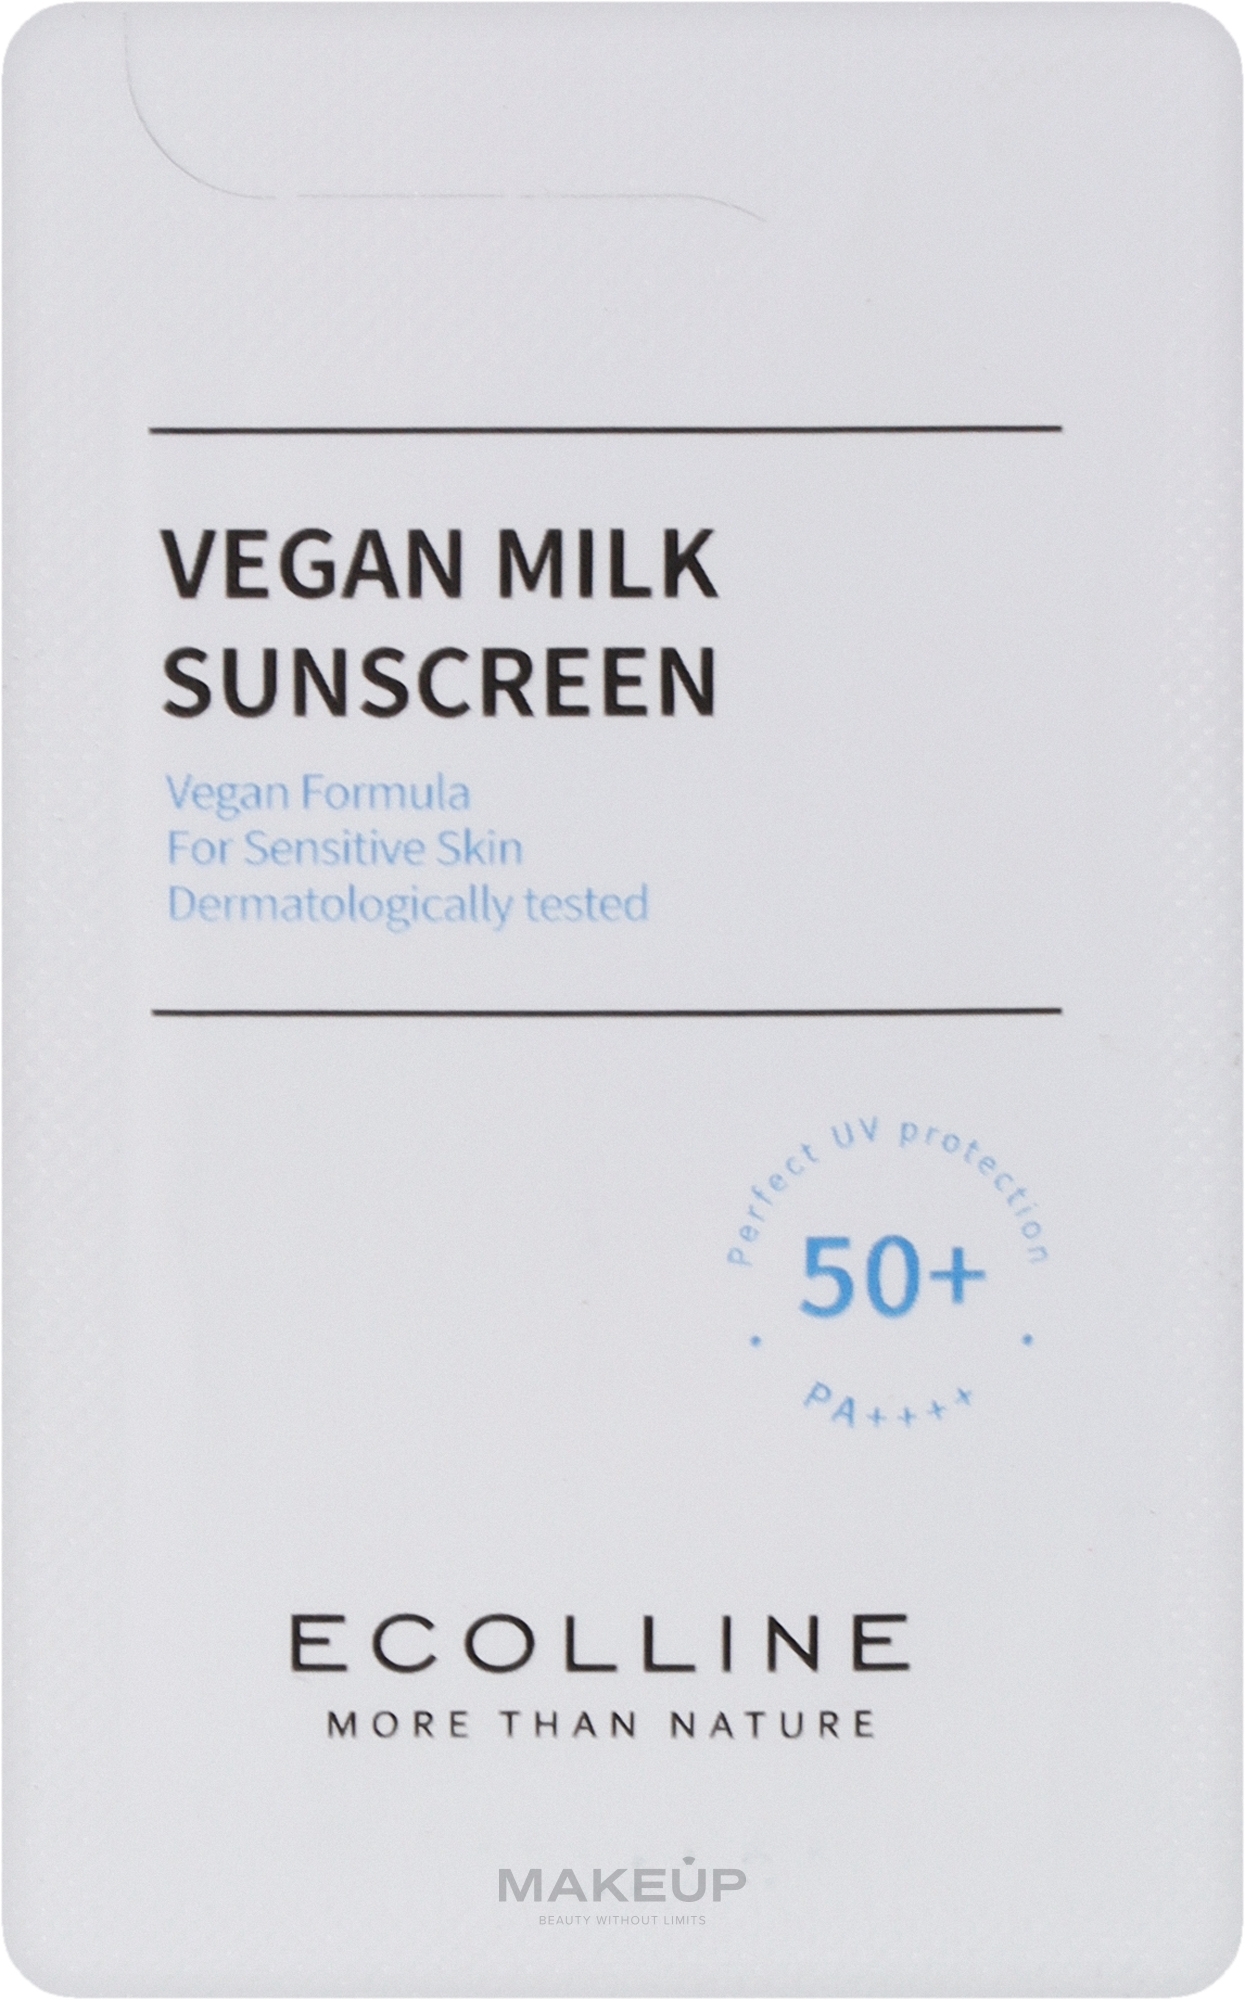 Веганское солнцезащитное молочко для лица и тела - Vegan Milk Sunscreen 50+, PA++++ (пробник) — фото 1ml